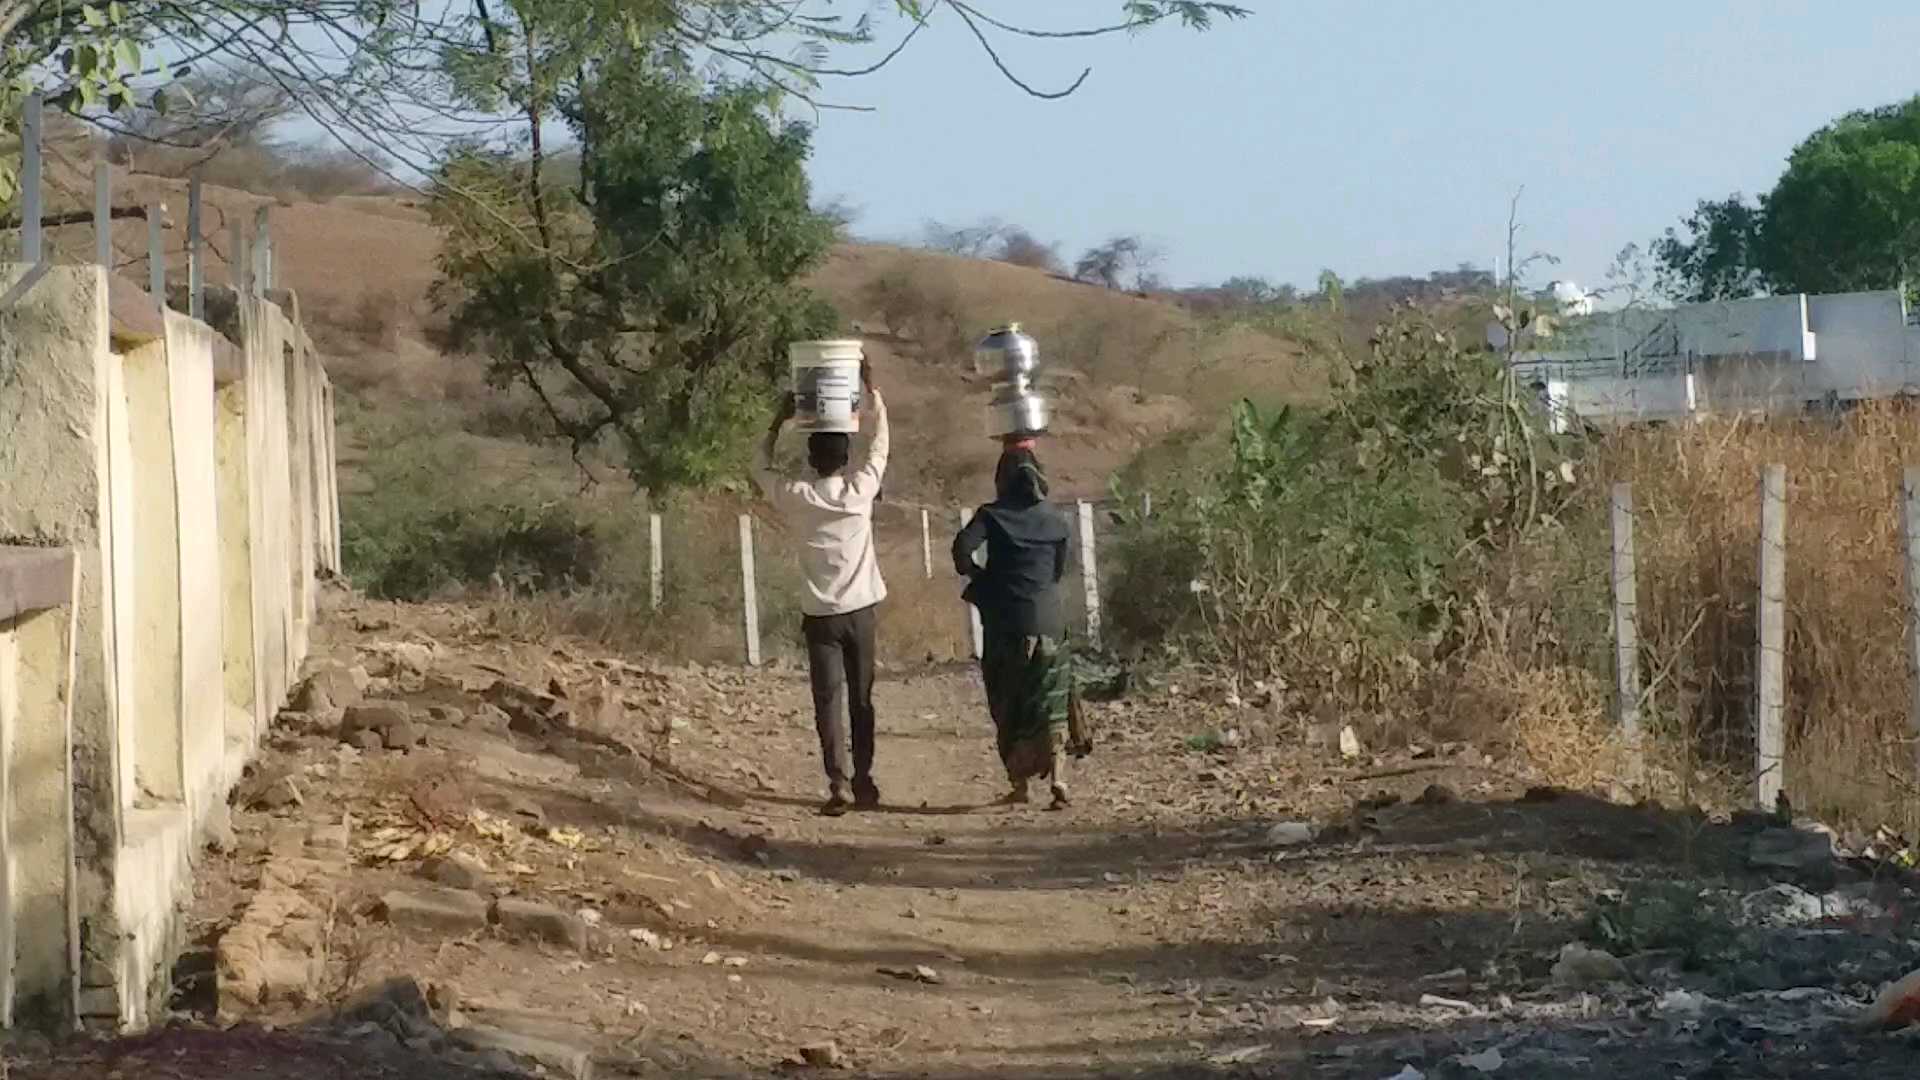 પાણી માટે દૂર-દૂરથી પરસેવો પાડતા લોકો